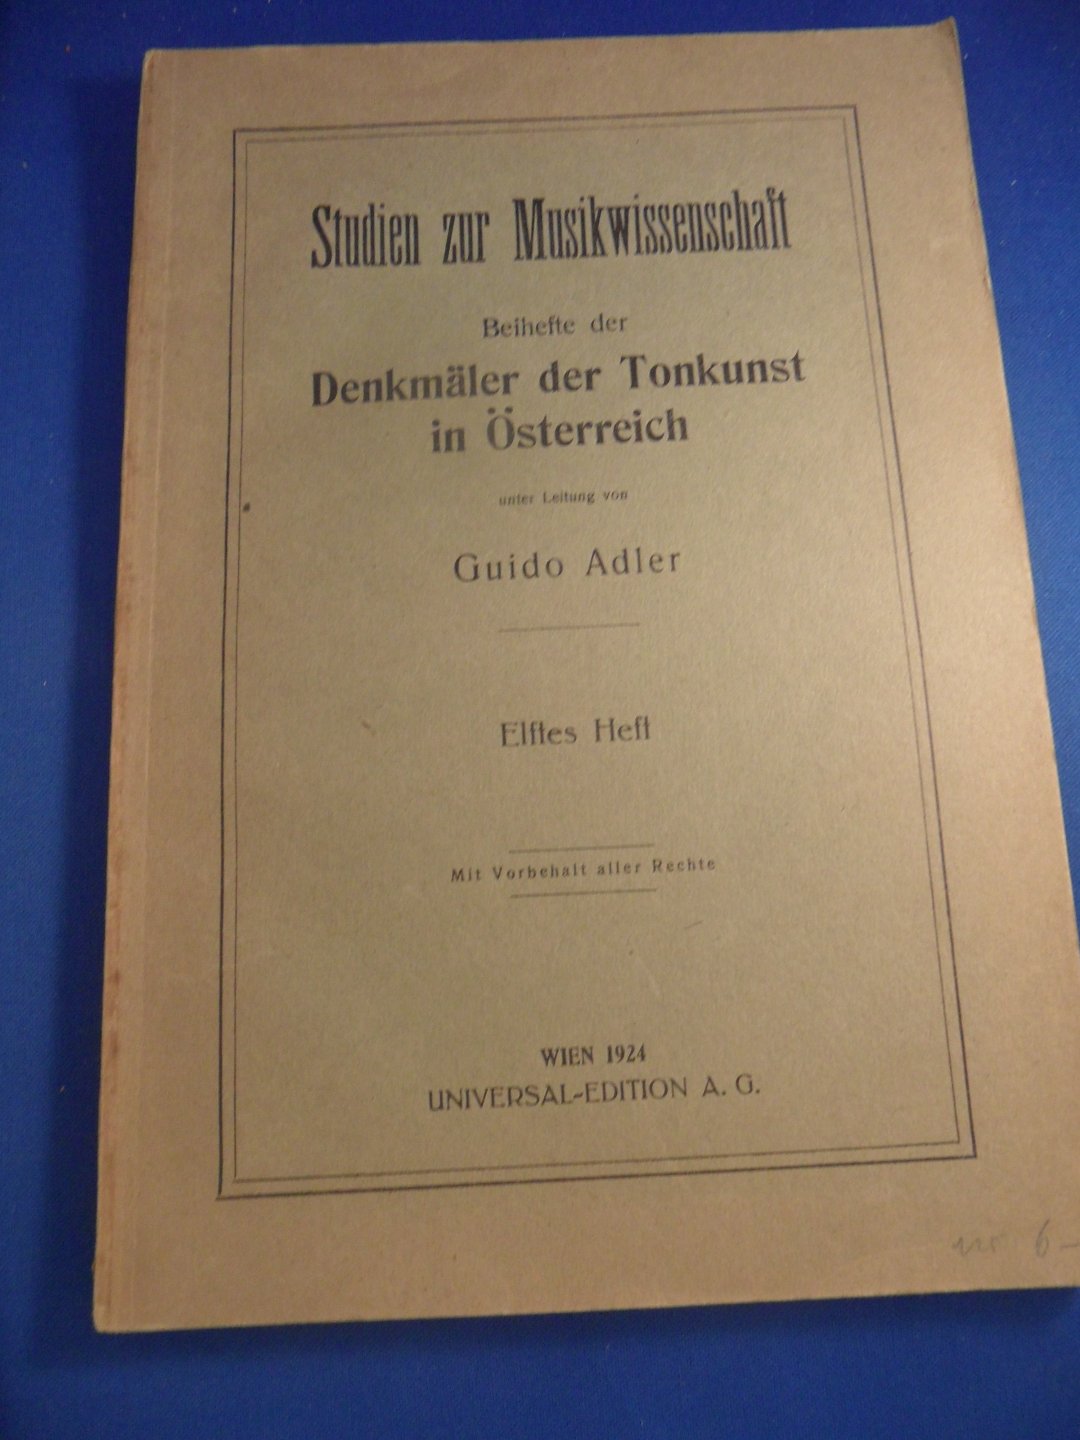 Adler, Guido - Beihefte der Denkmäler der Tonkunst in Österreich